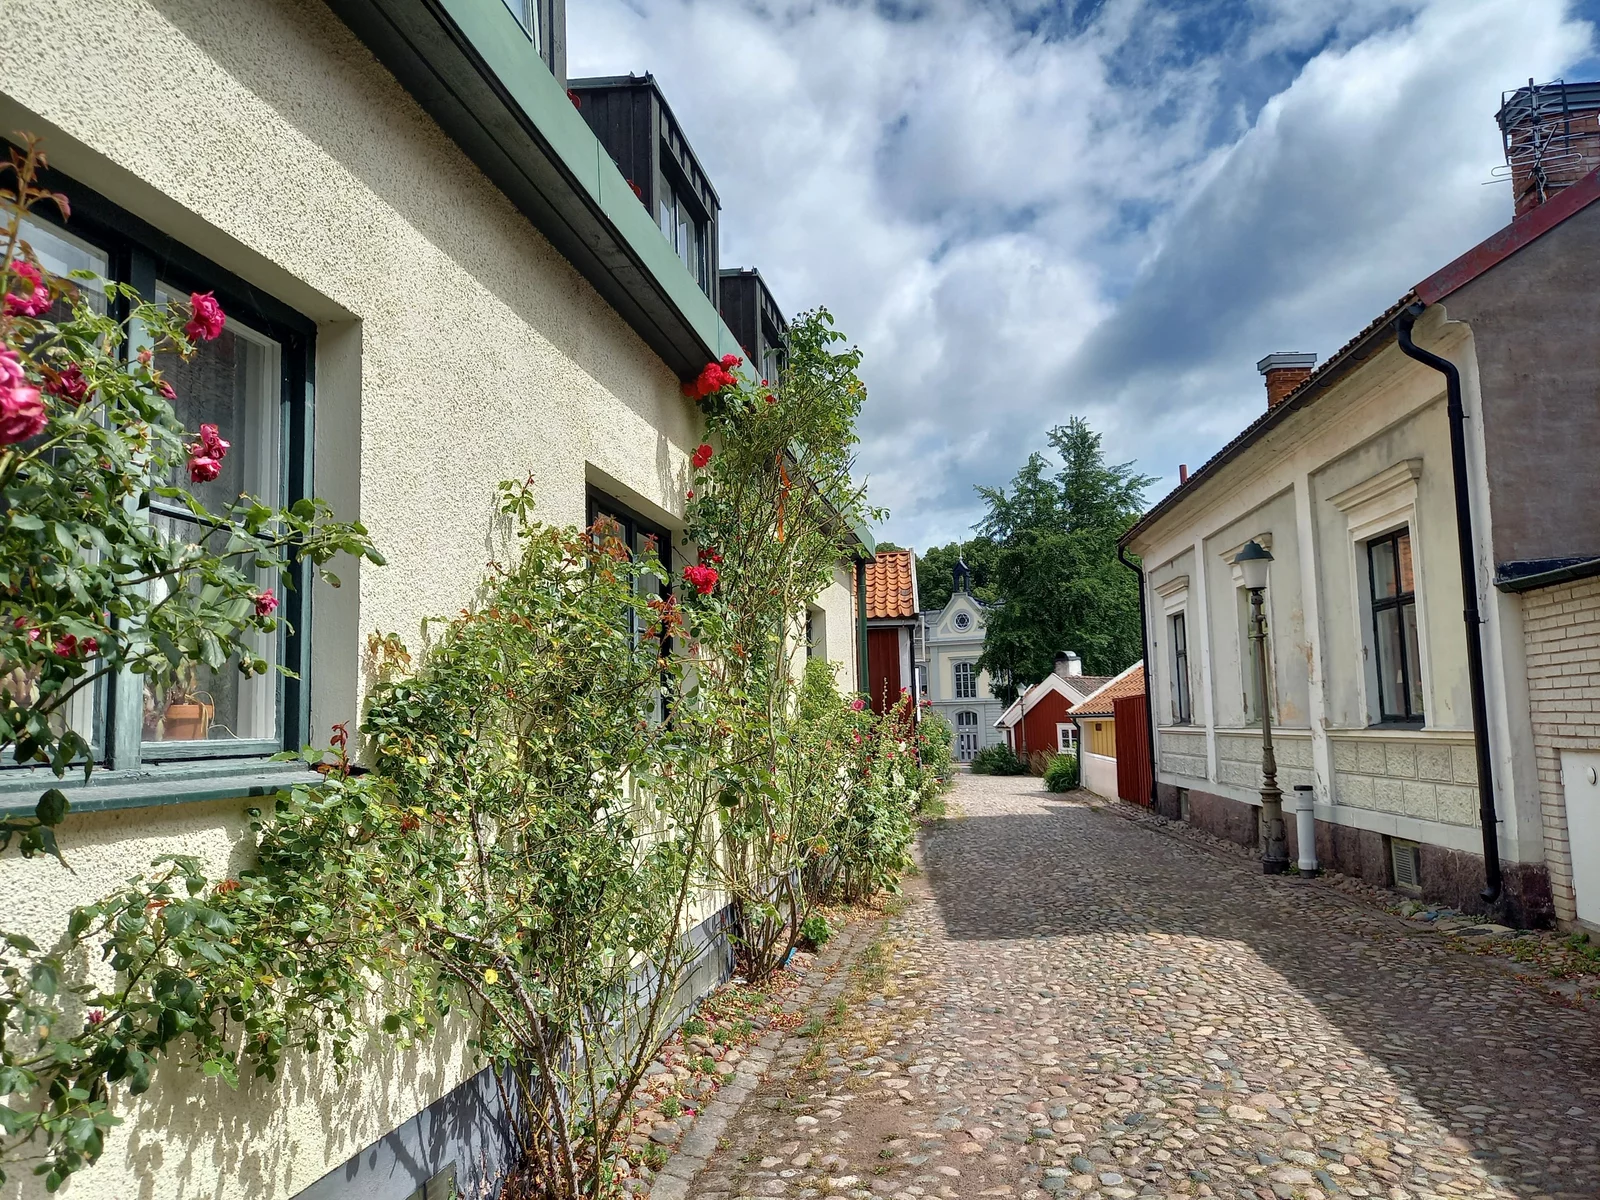 nuce street in Sweden